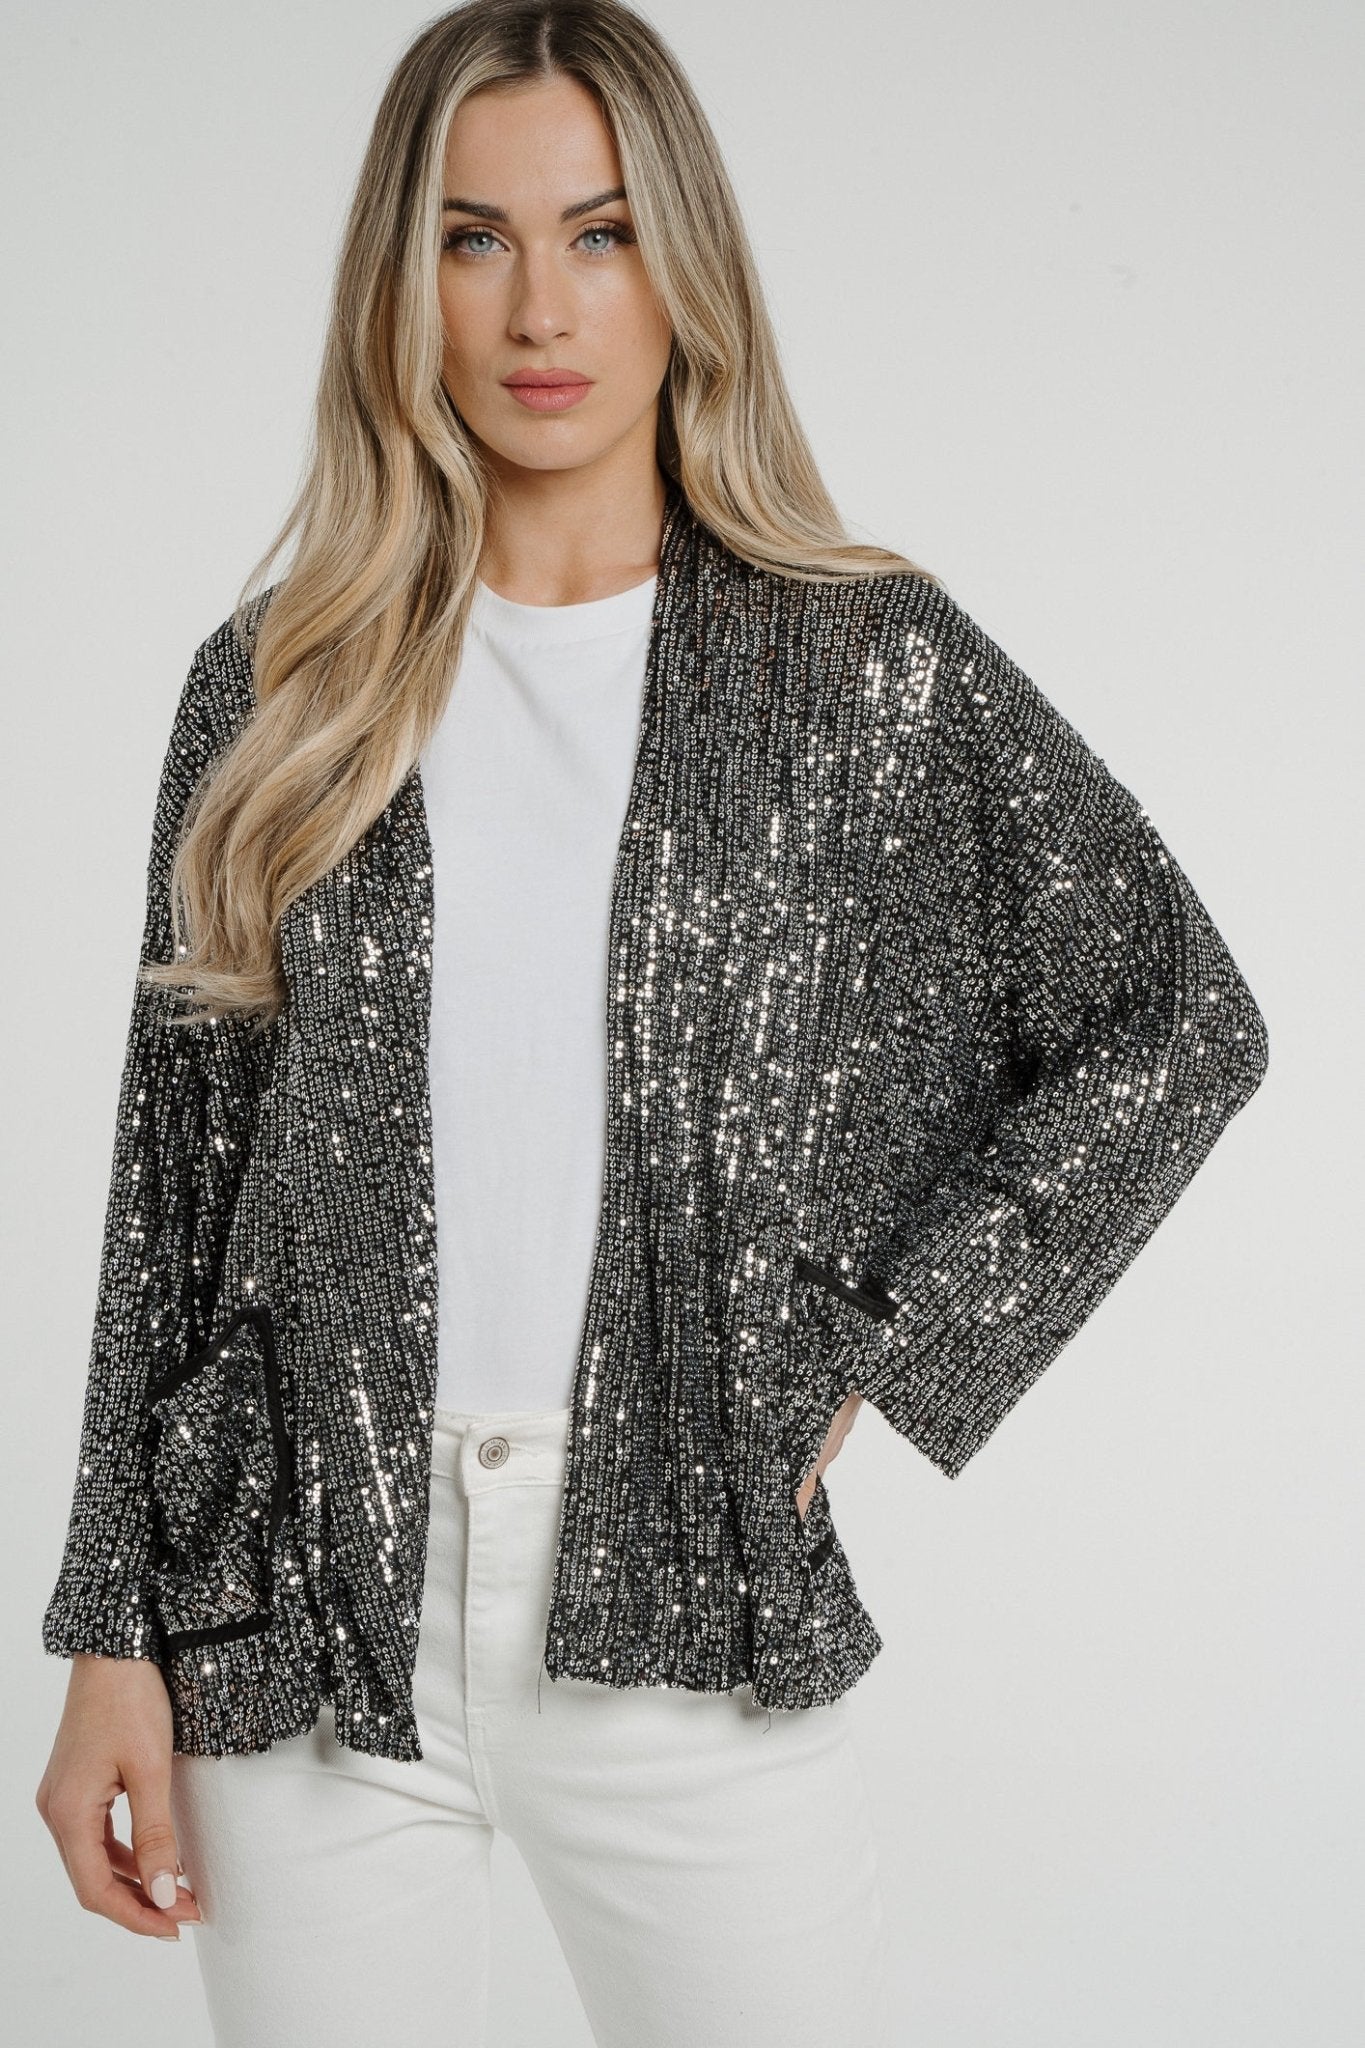 Kendra Sequin Jacket In Silver - The Walk in Wardrobe